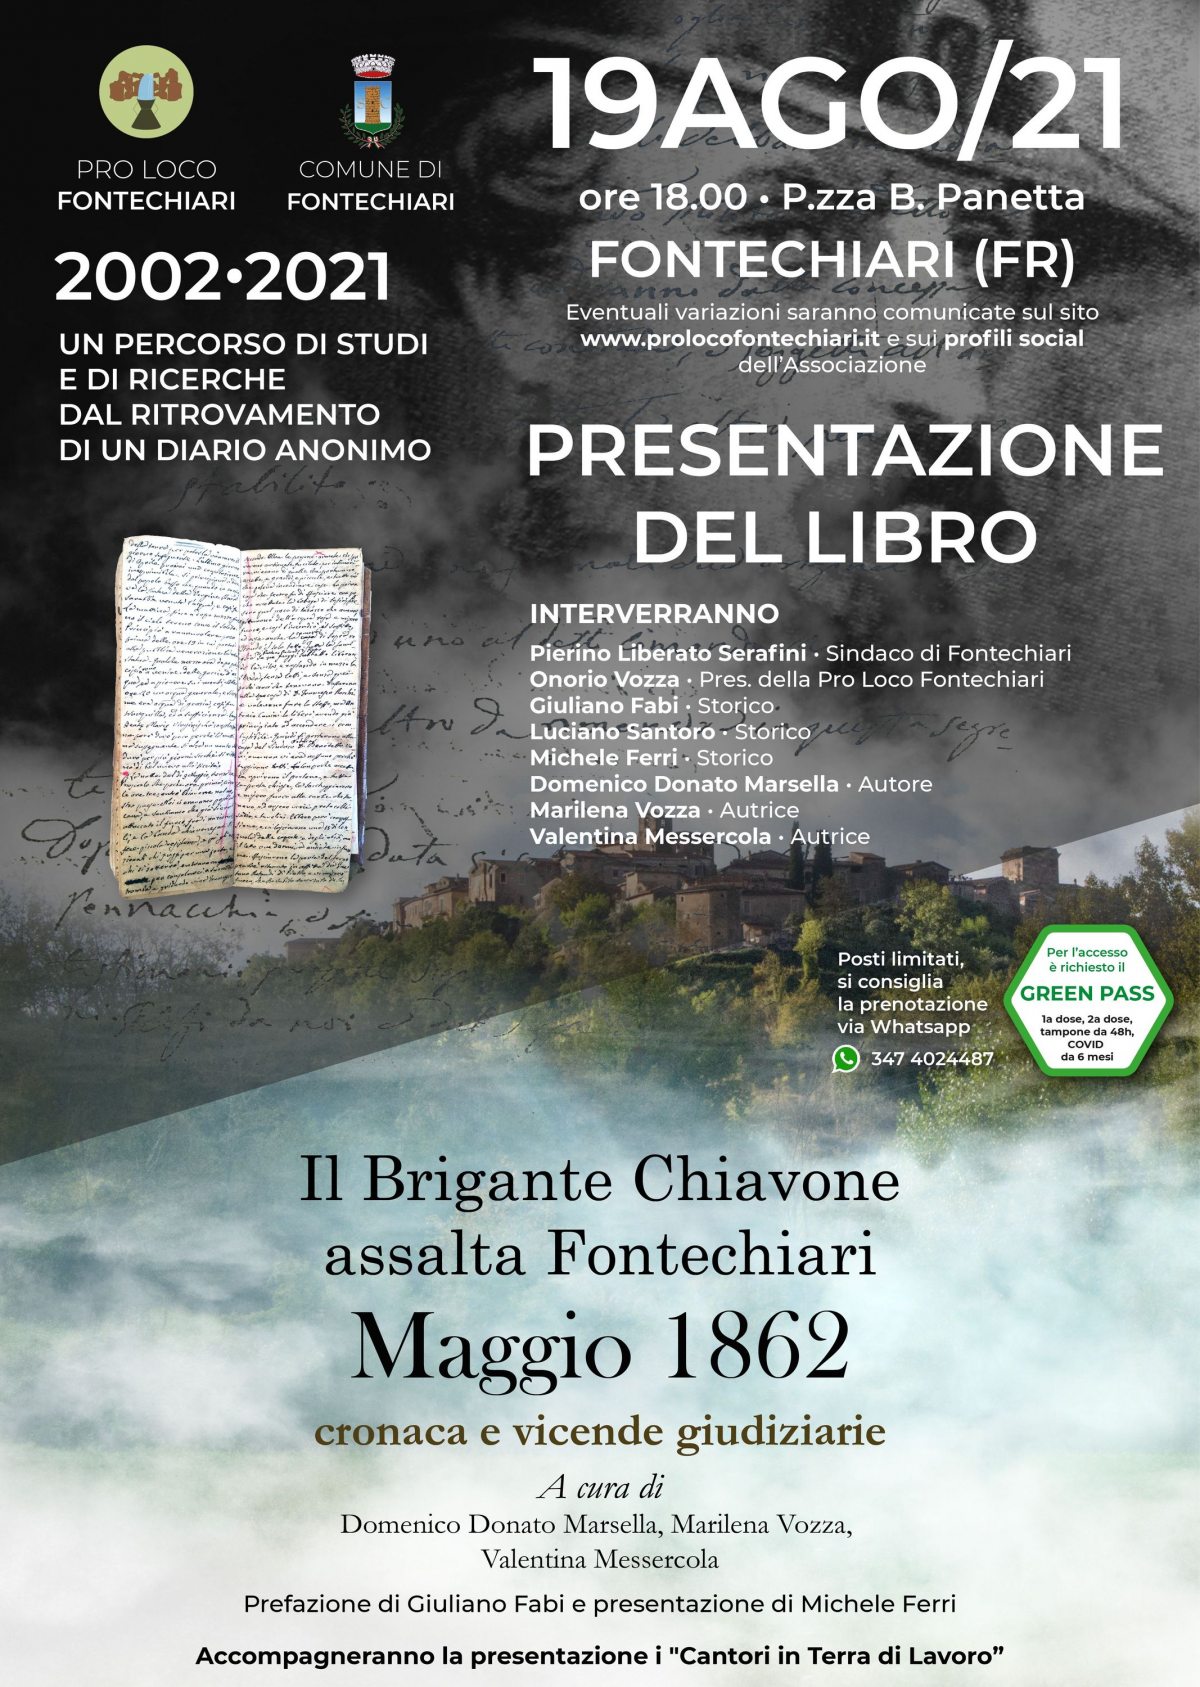 You are currently viewing Il Brigante Chiavone assalta Fontechiari MAGGIO 1862 • Presentazione del Libro